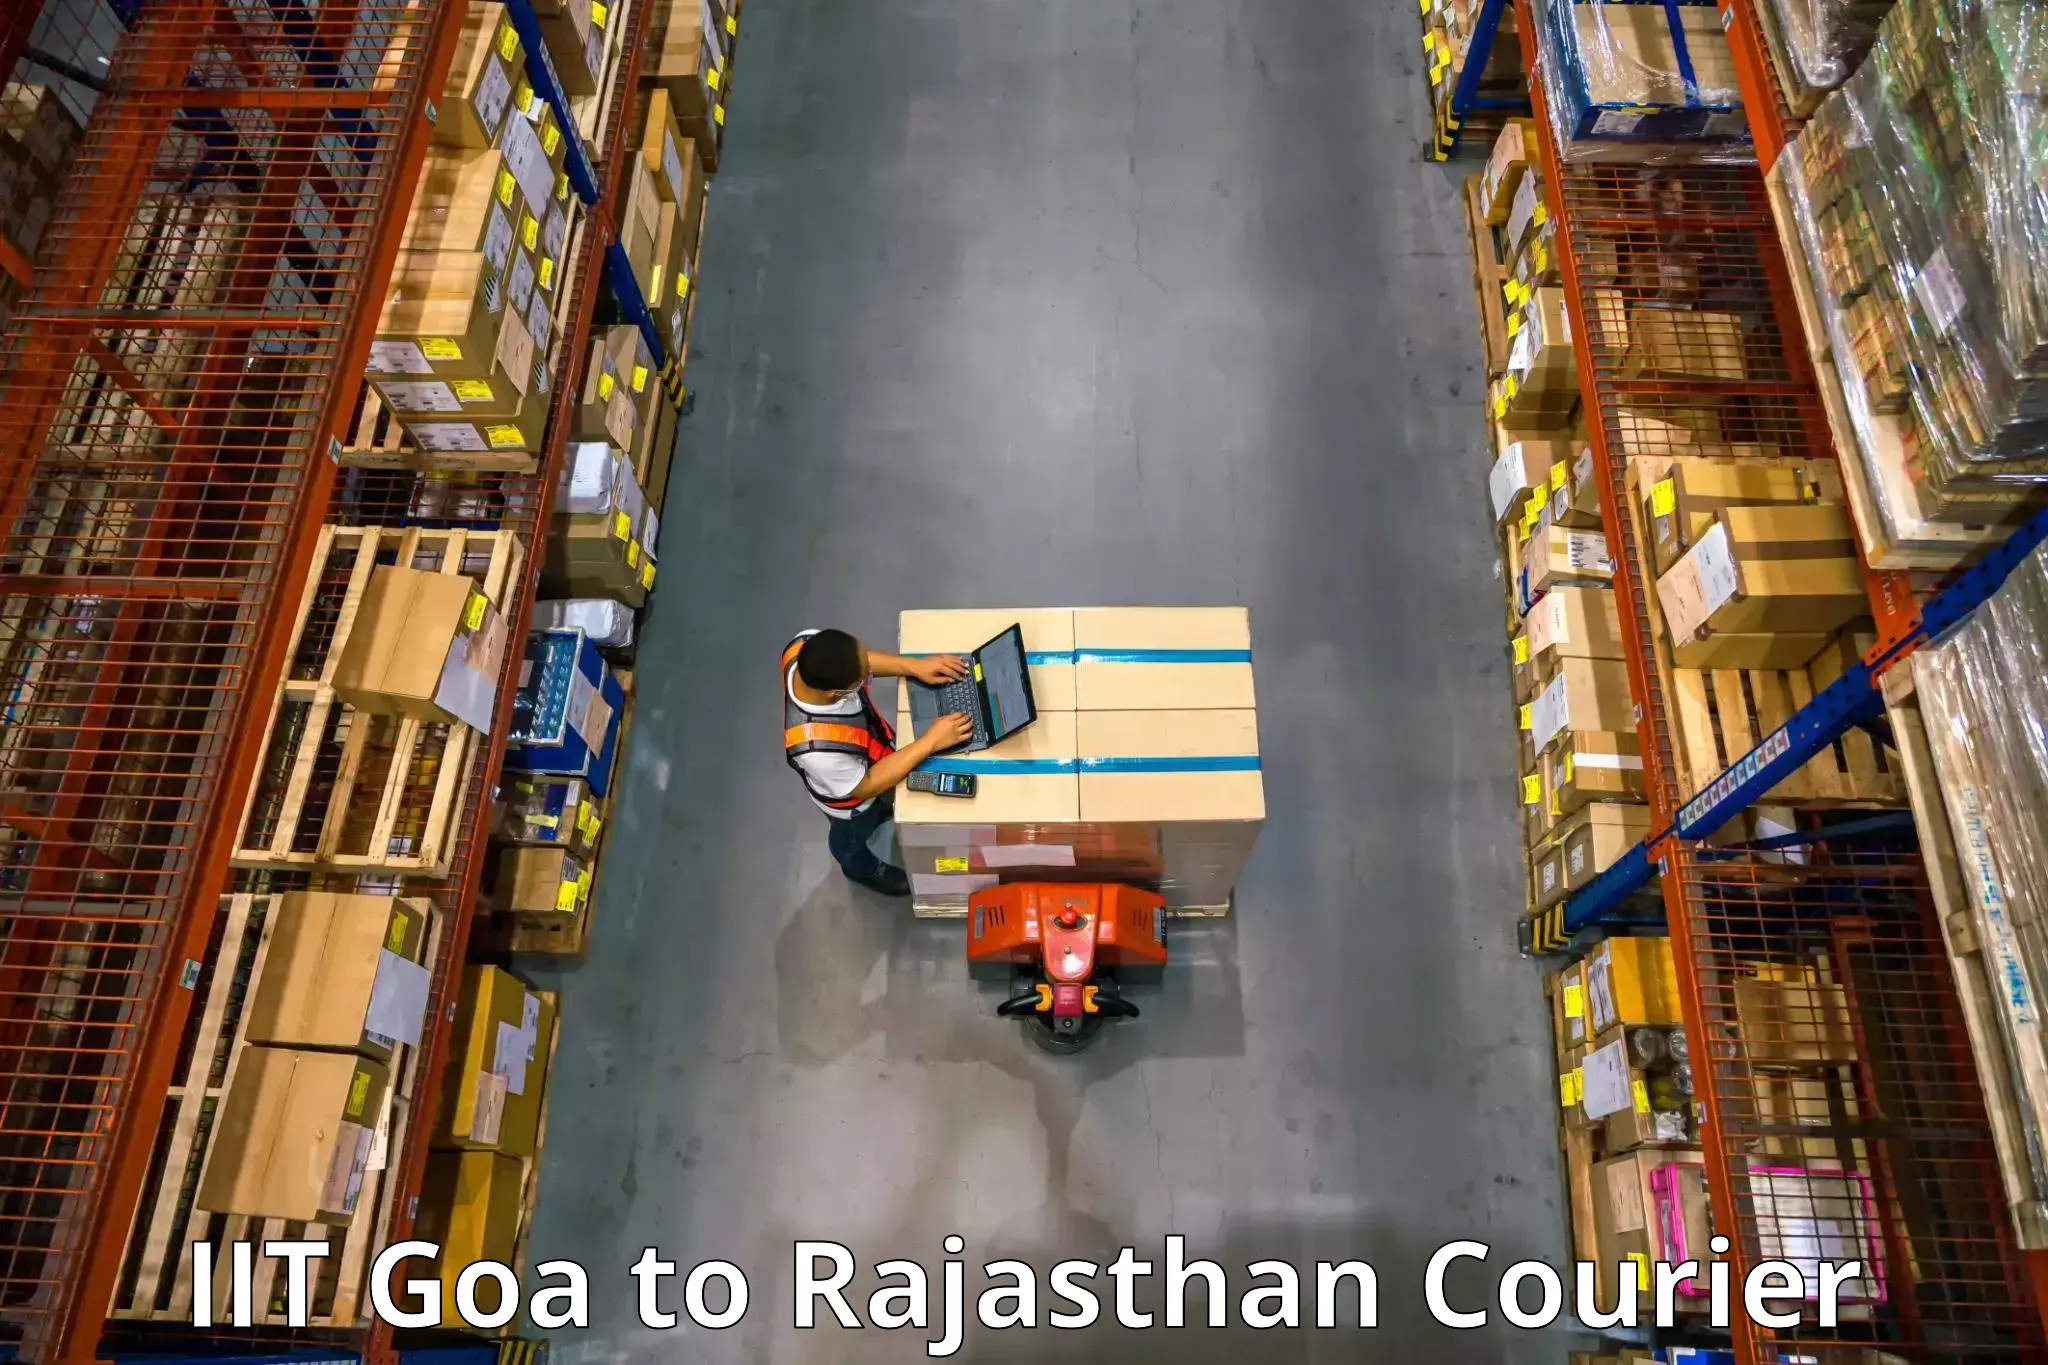 Professional furniture movers in IIT Goa to Bilara